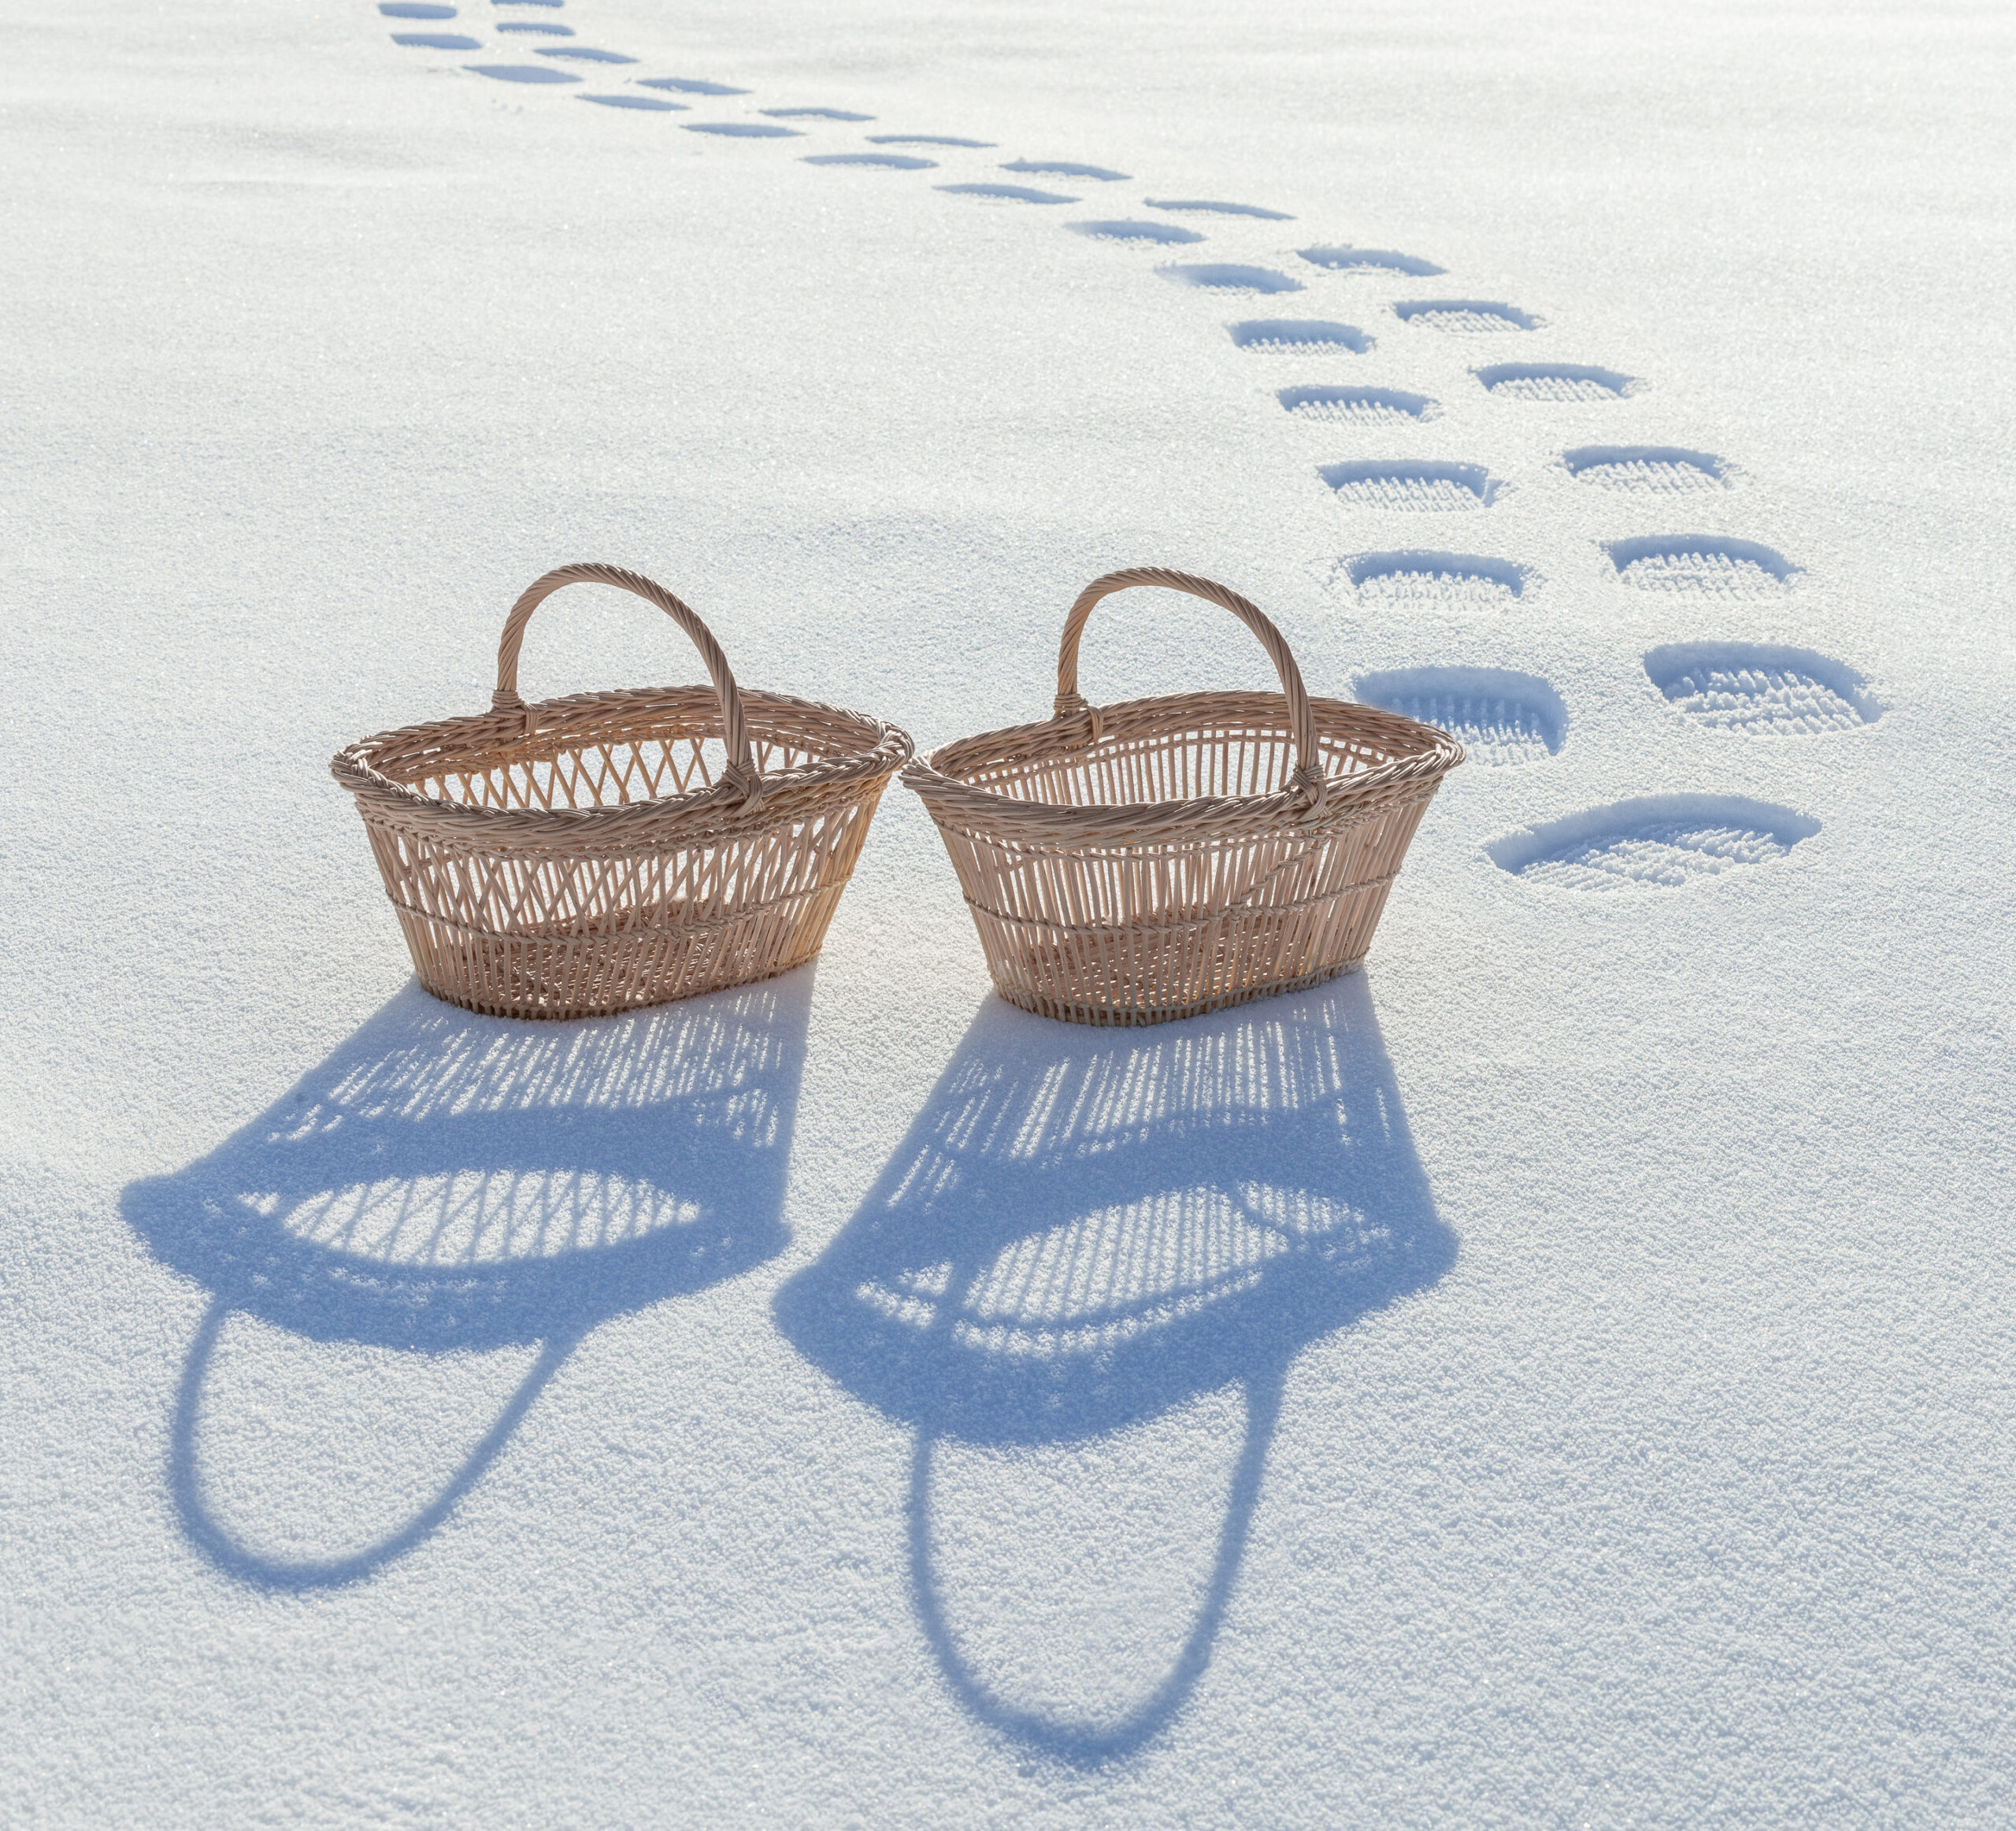 Deux paniers se baladent dans la neige. Derrière eux, on voit leurs empreinte dans la neige fraîche.